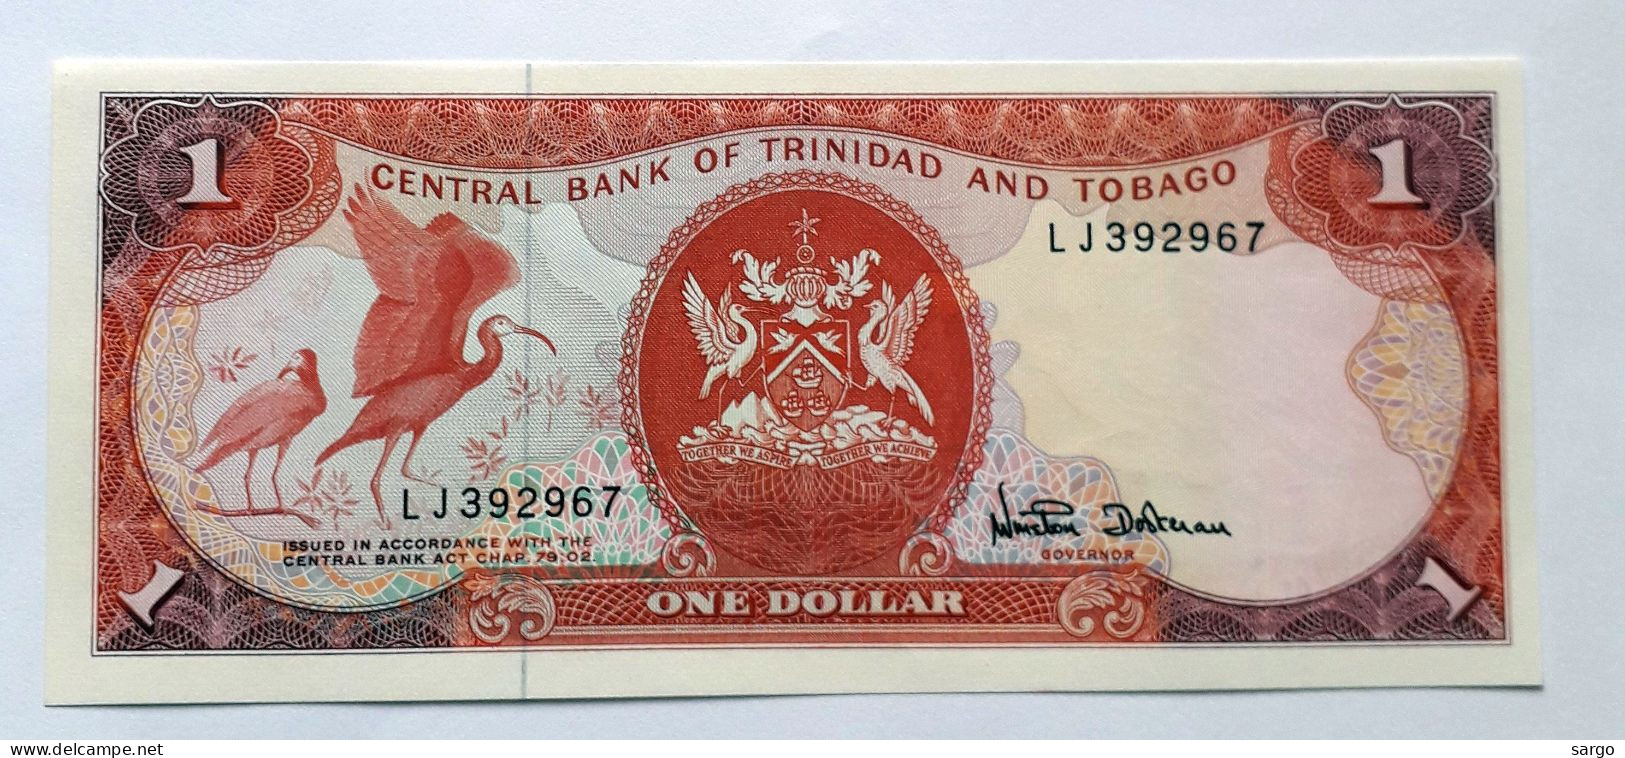 TRINIDAD AND TOBAGO  - 1 DOLLAR  - P 36  (1985) - UNC -  BANKNOTES - PAPER MONEY - Trinidad En Tobago